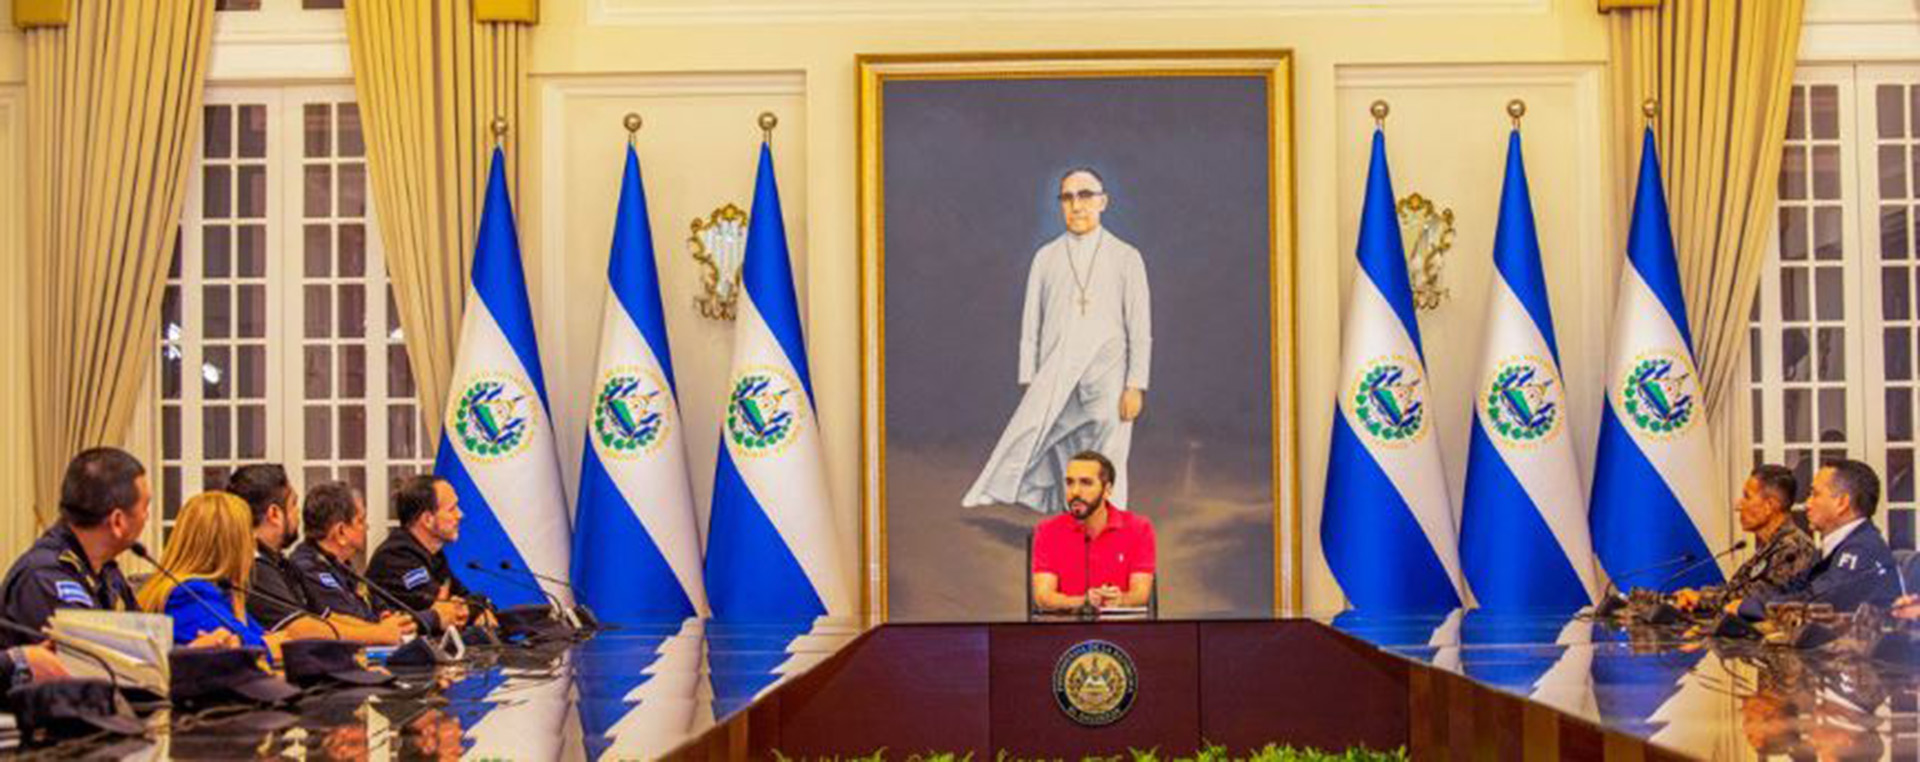 Reunión del presidente salvadoreño Nayib Bukele con su gabinete de seguridad pública. Foto de Presidencia El Salvador.